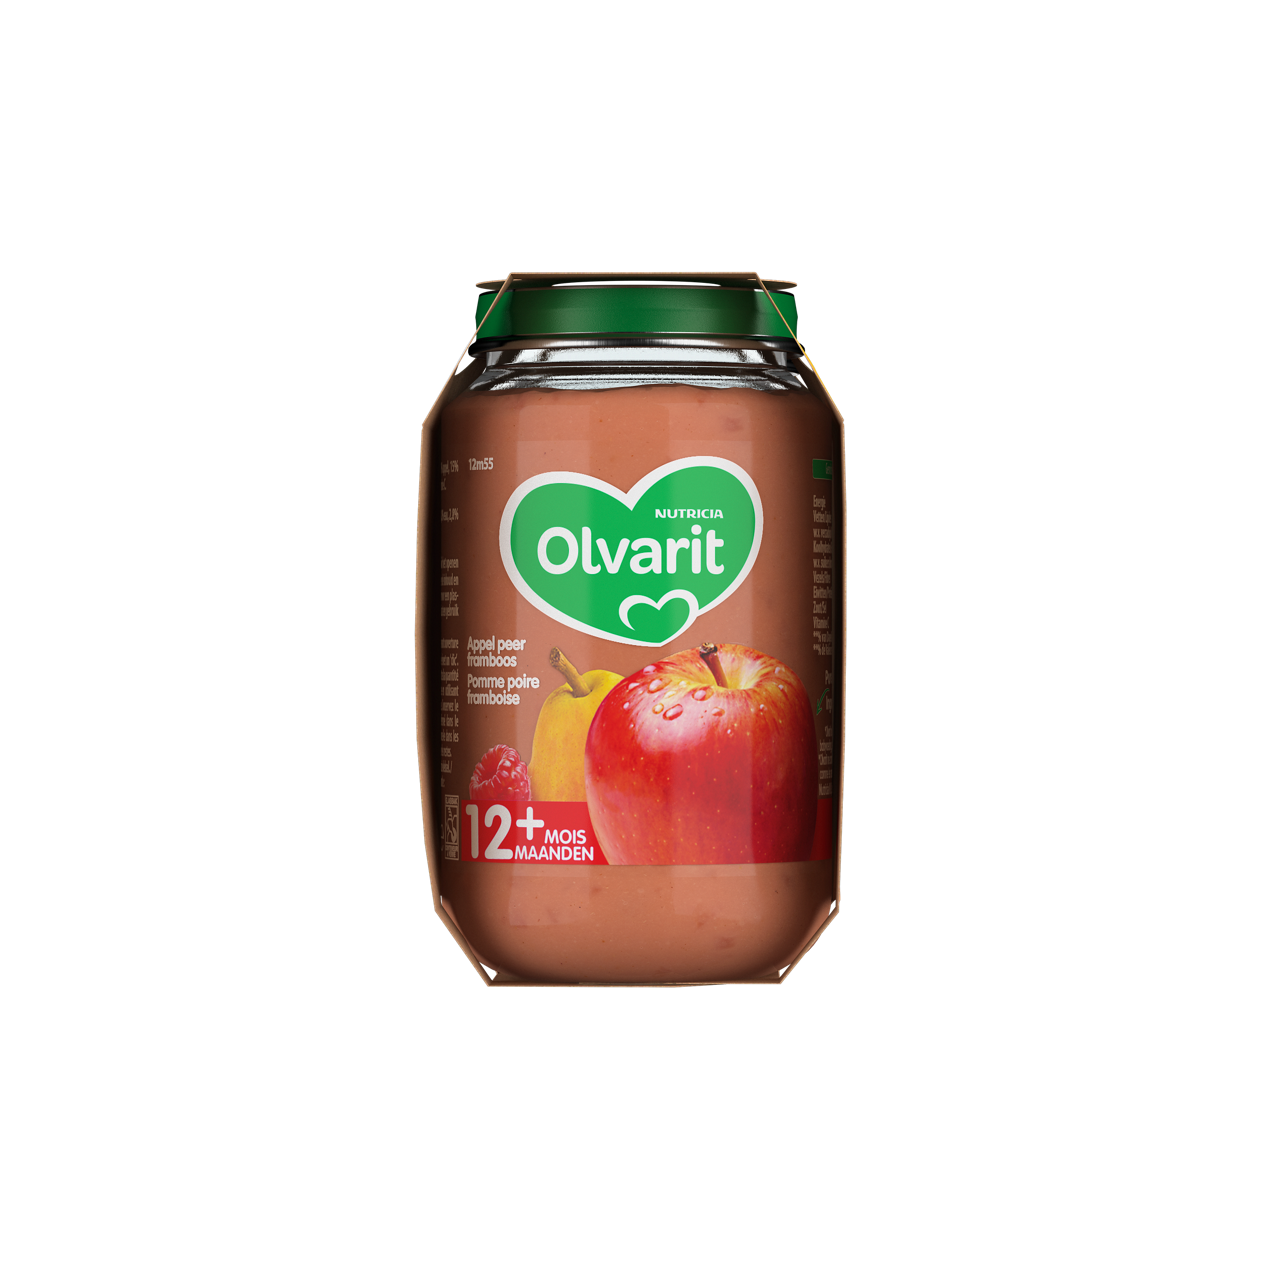 Olvarit Pomme Poire Framboire (200 g). Consultez notre site web Olvarit.be pour plus d'info sur alimentation pour bébé et les produits Olvarit.